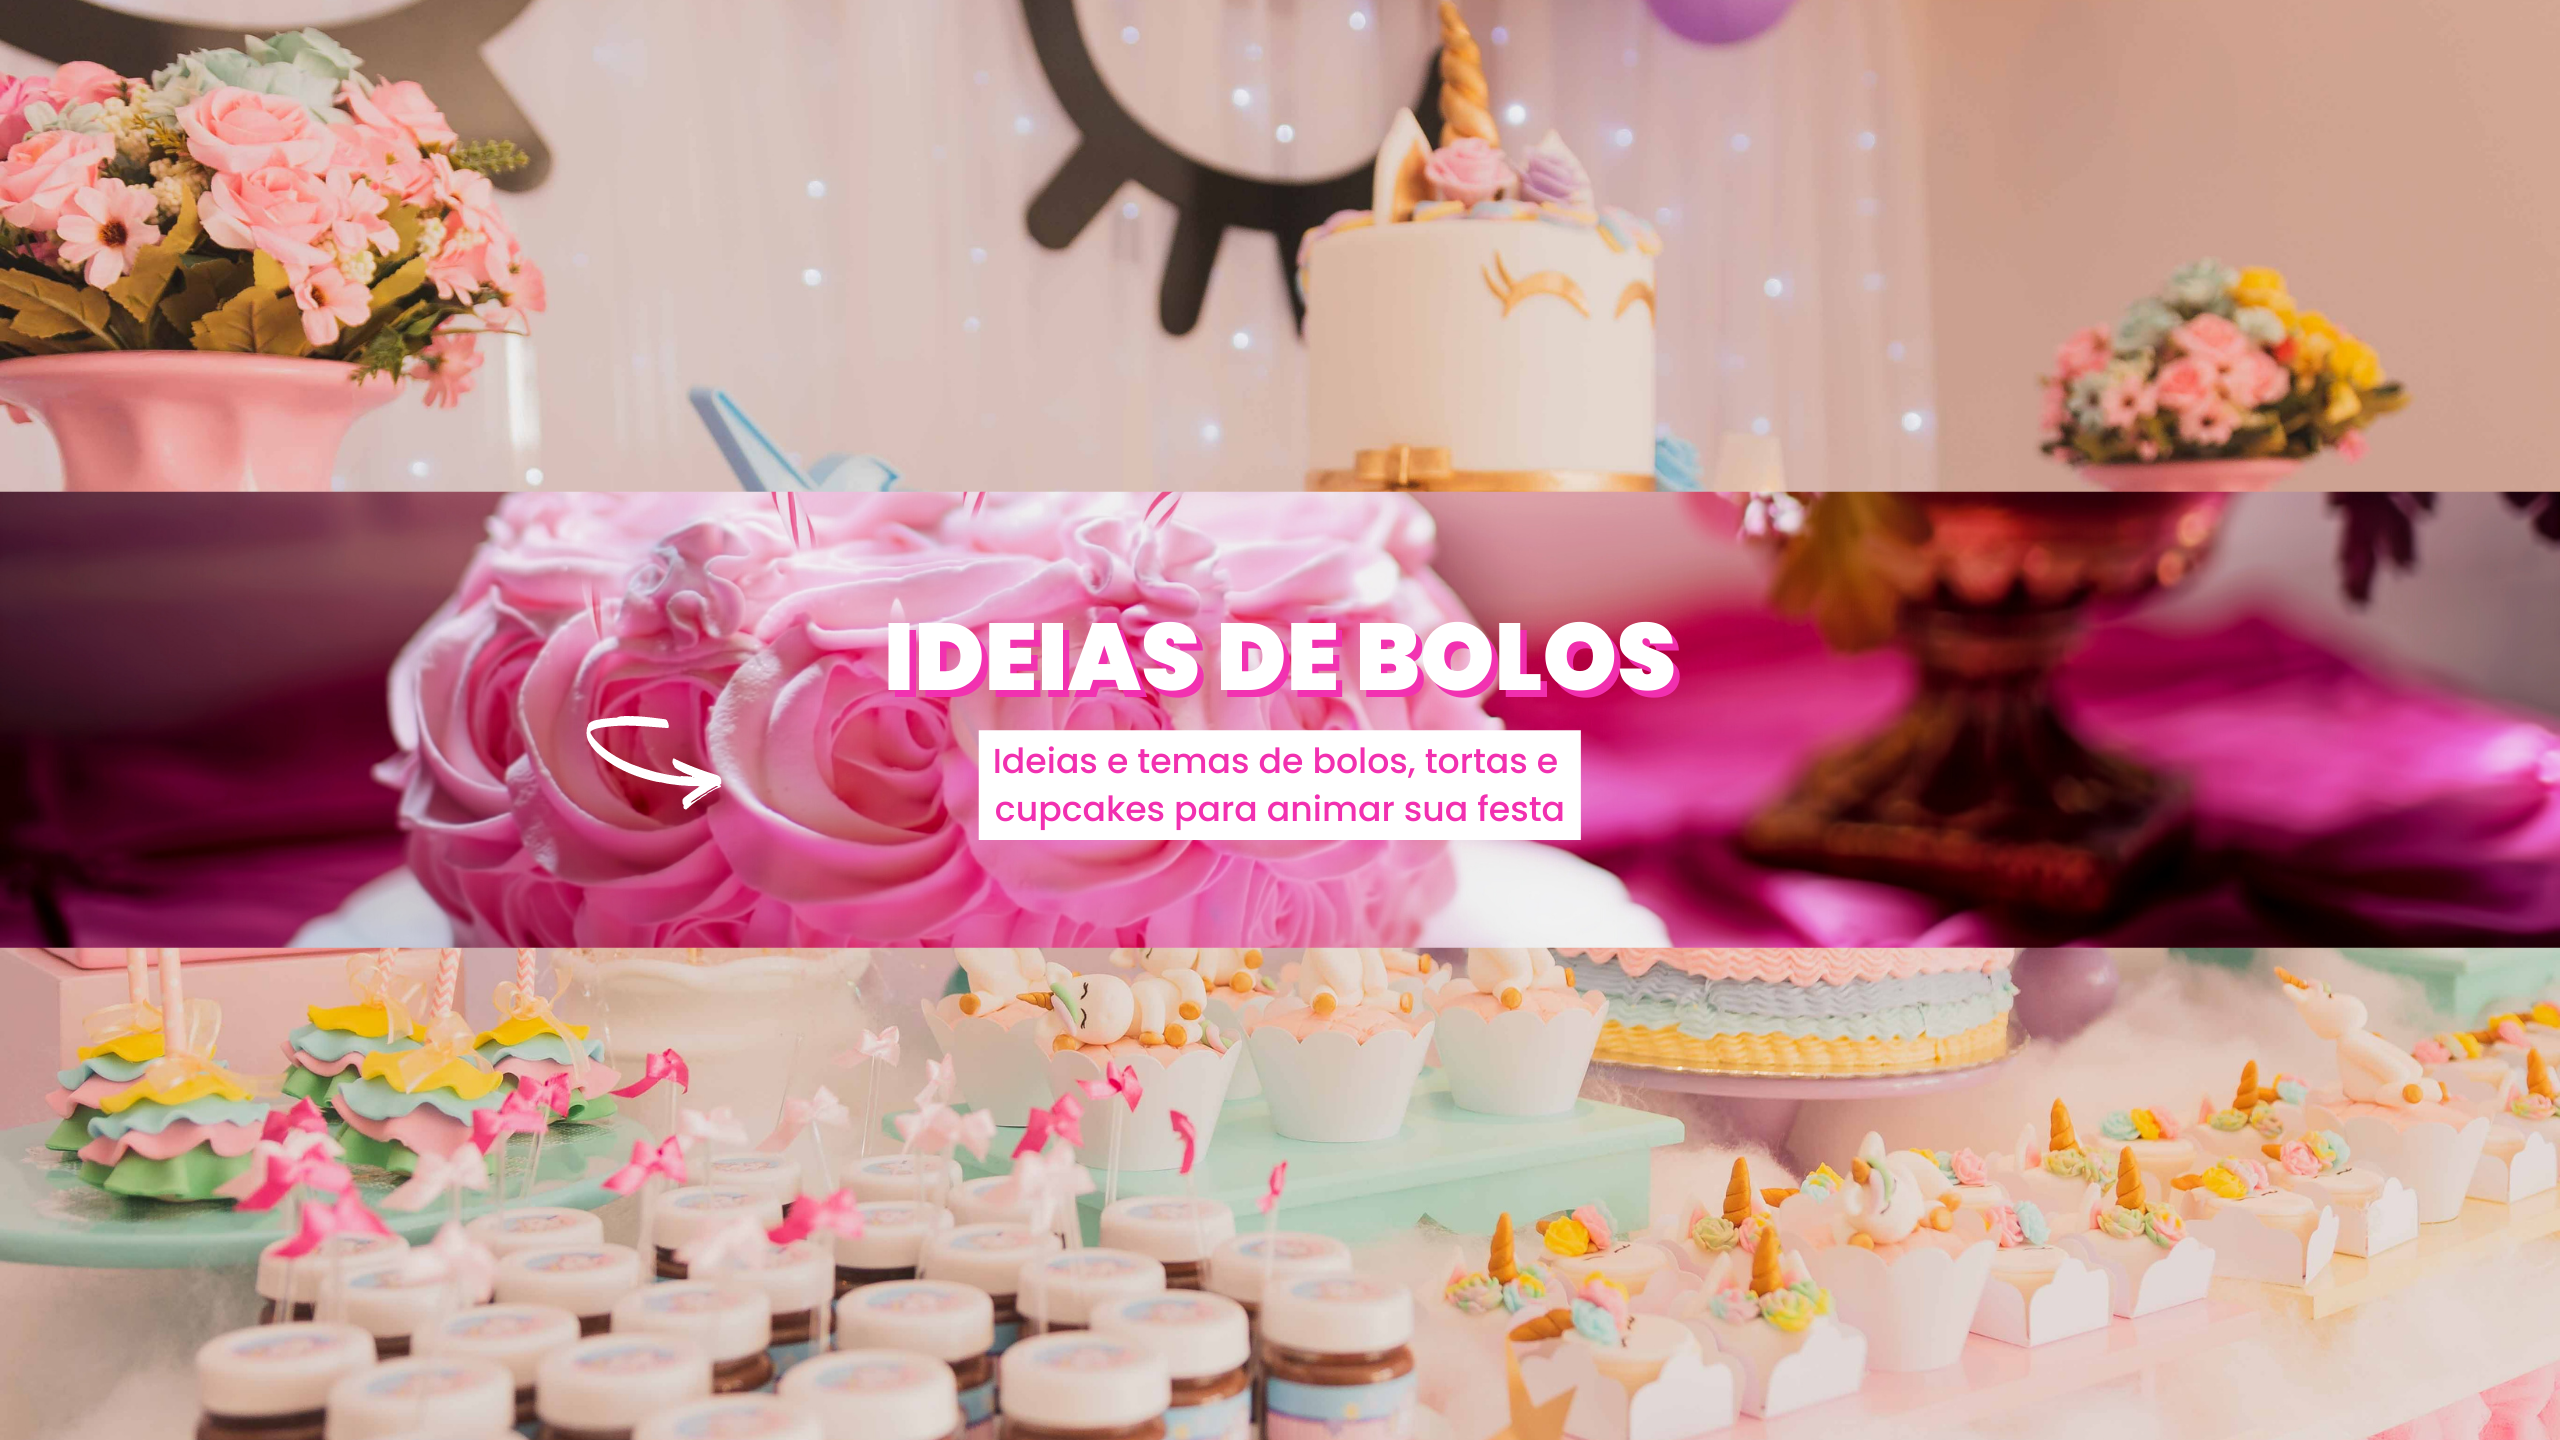 Ideias de Bolo - confira diversas sugestões de bolos, tortas, cakes, cupcakes para animar sua festa com temas mais variados.